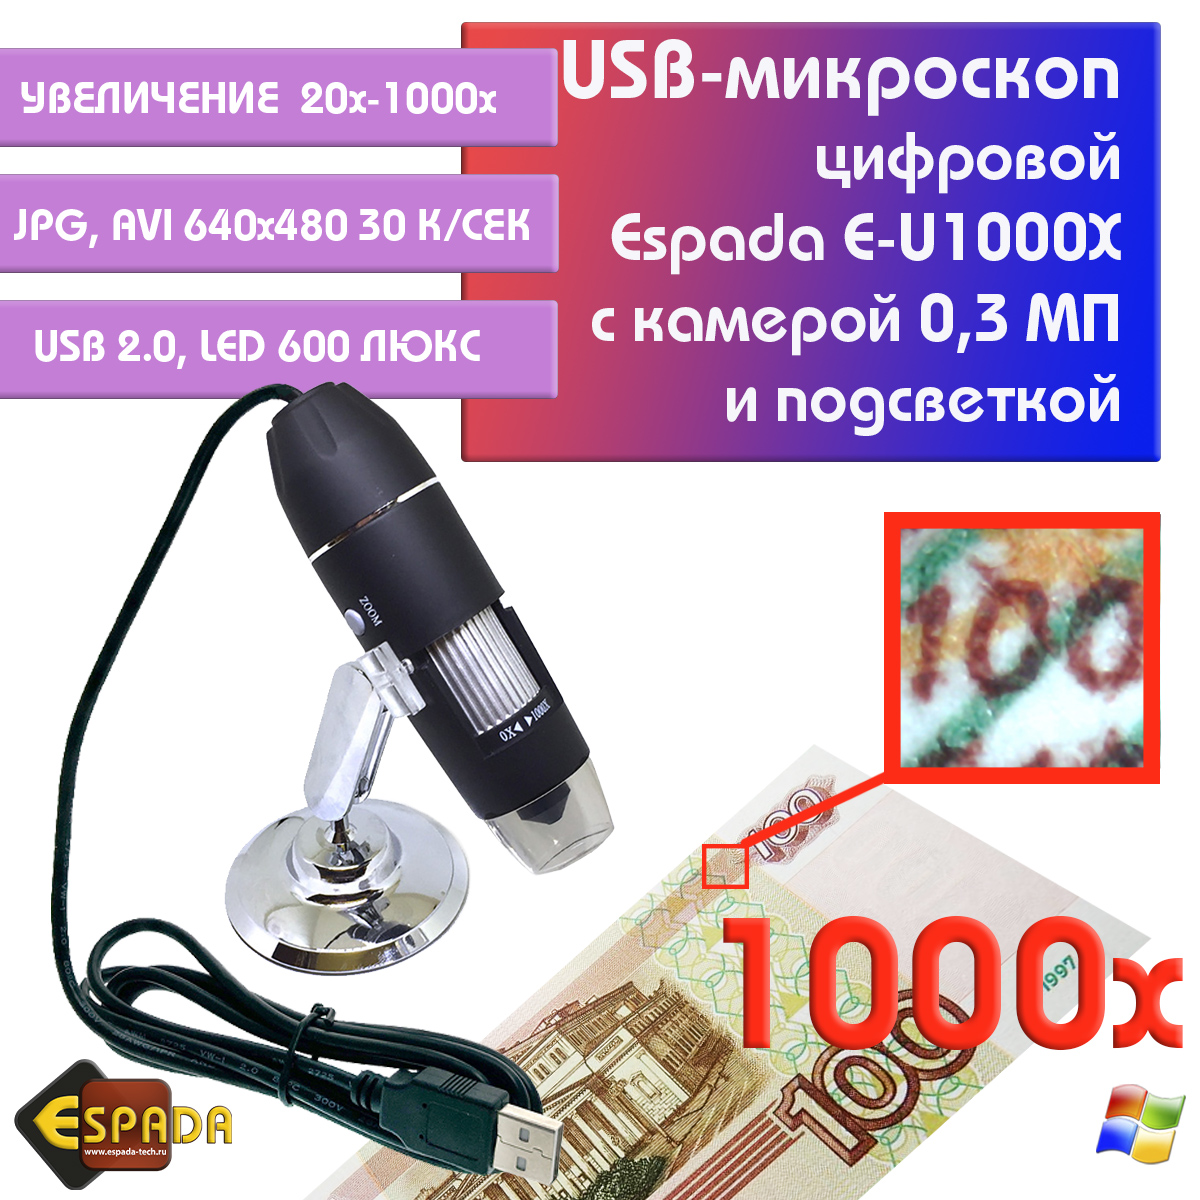 Портативный цифровой USB-микроскоп Espada E-U1000X c камерой 0,3 МП и увеличением 1000x